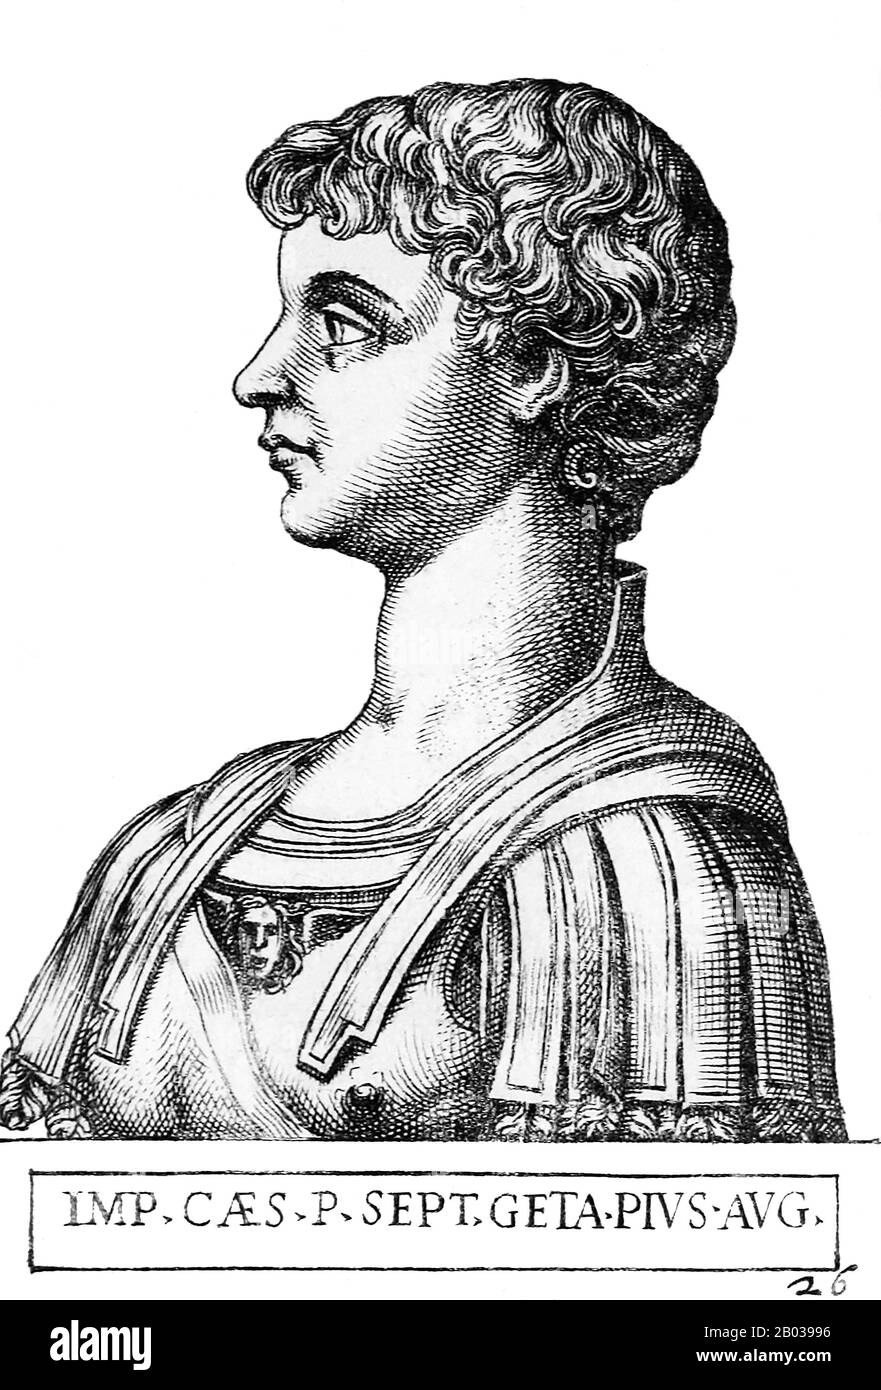 Geta (189-211 ce) était le fils plus jeune de l'empereur Sptimius Severus, né à Rome sous le règne de l'empereur Commodus. Geta se battait souvent avec son frère aîné, Caracalla, et nécessiterait la médiation de sa mère Julia Domna. Septimius Severus a nommé Geta 'Augustus' en 209, faisant de lui un co-empereur aux côtés de Caracalla, qui avait été nommé co-empereur il y a plus de 10 ans, en 198 ce. Septimius Severus est mort au début du 211 EC, avec Geta et Caracalla ont déclaré des empereurs conjoints et ordonné de retourner à Rome. Mais leur haine et leur rivalité les unes avec les autres n'ont pas abdié, et il y a même eu des discussions sur Spitt Banque D'Images